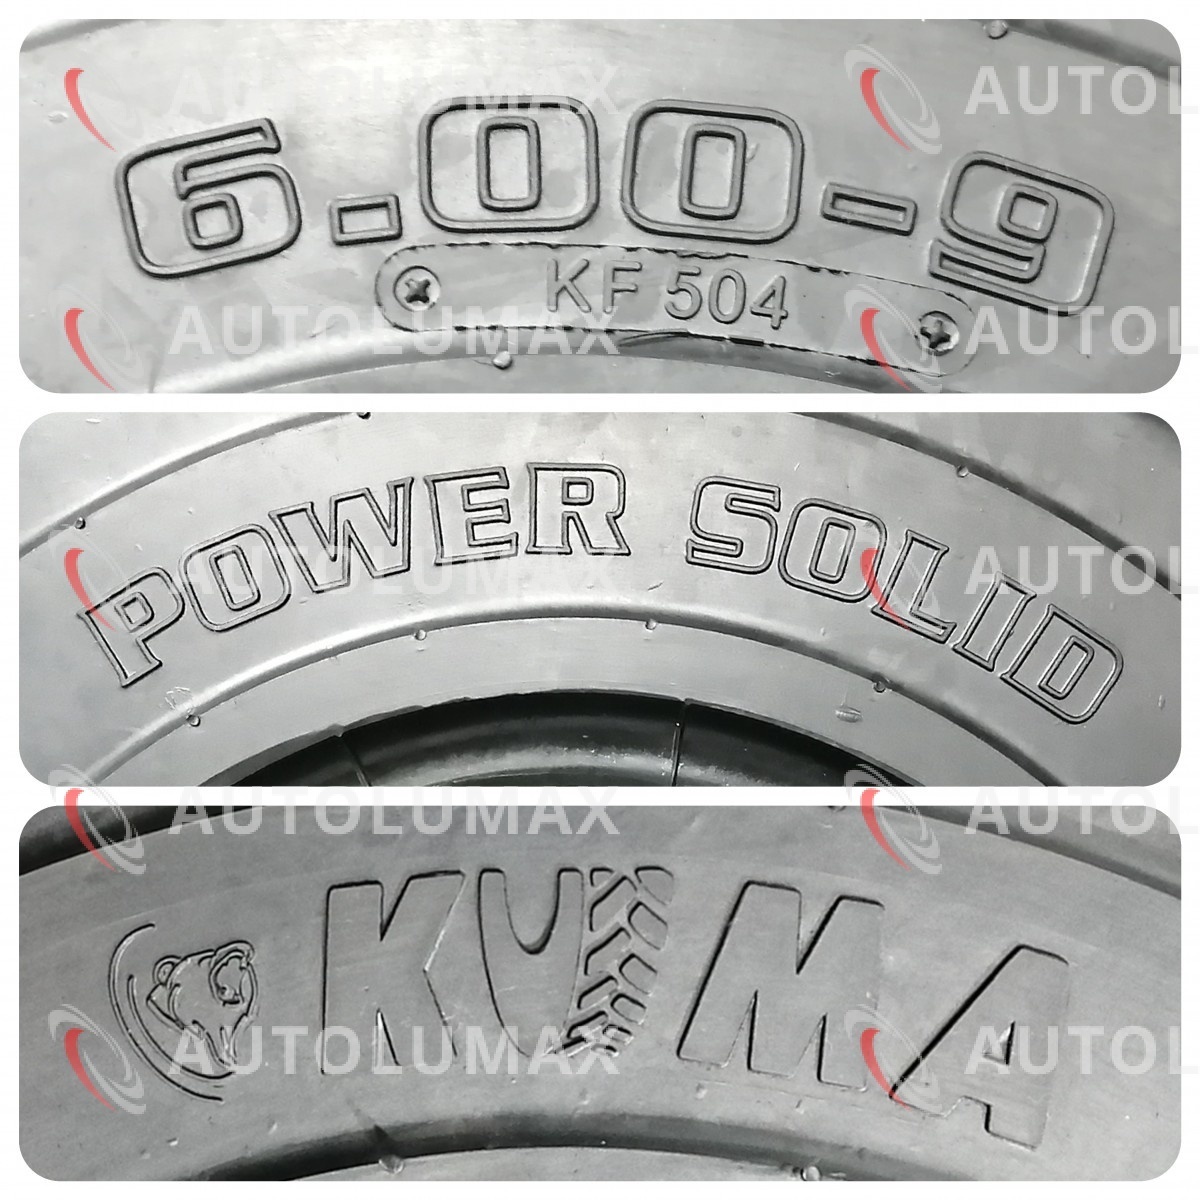 6.00-9 (600-9) リム幅4.00 KUMA KF504 SOLID ソリッドタイヤ ノーパンクタイヤ フォークリフト 新品 2本セット 2022年製 ベトナム製 2_画像4